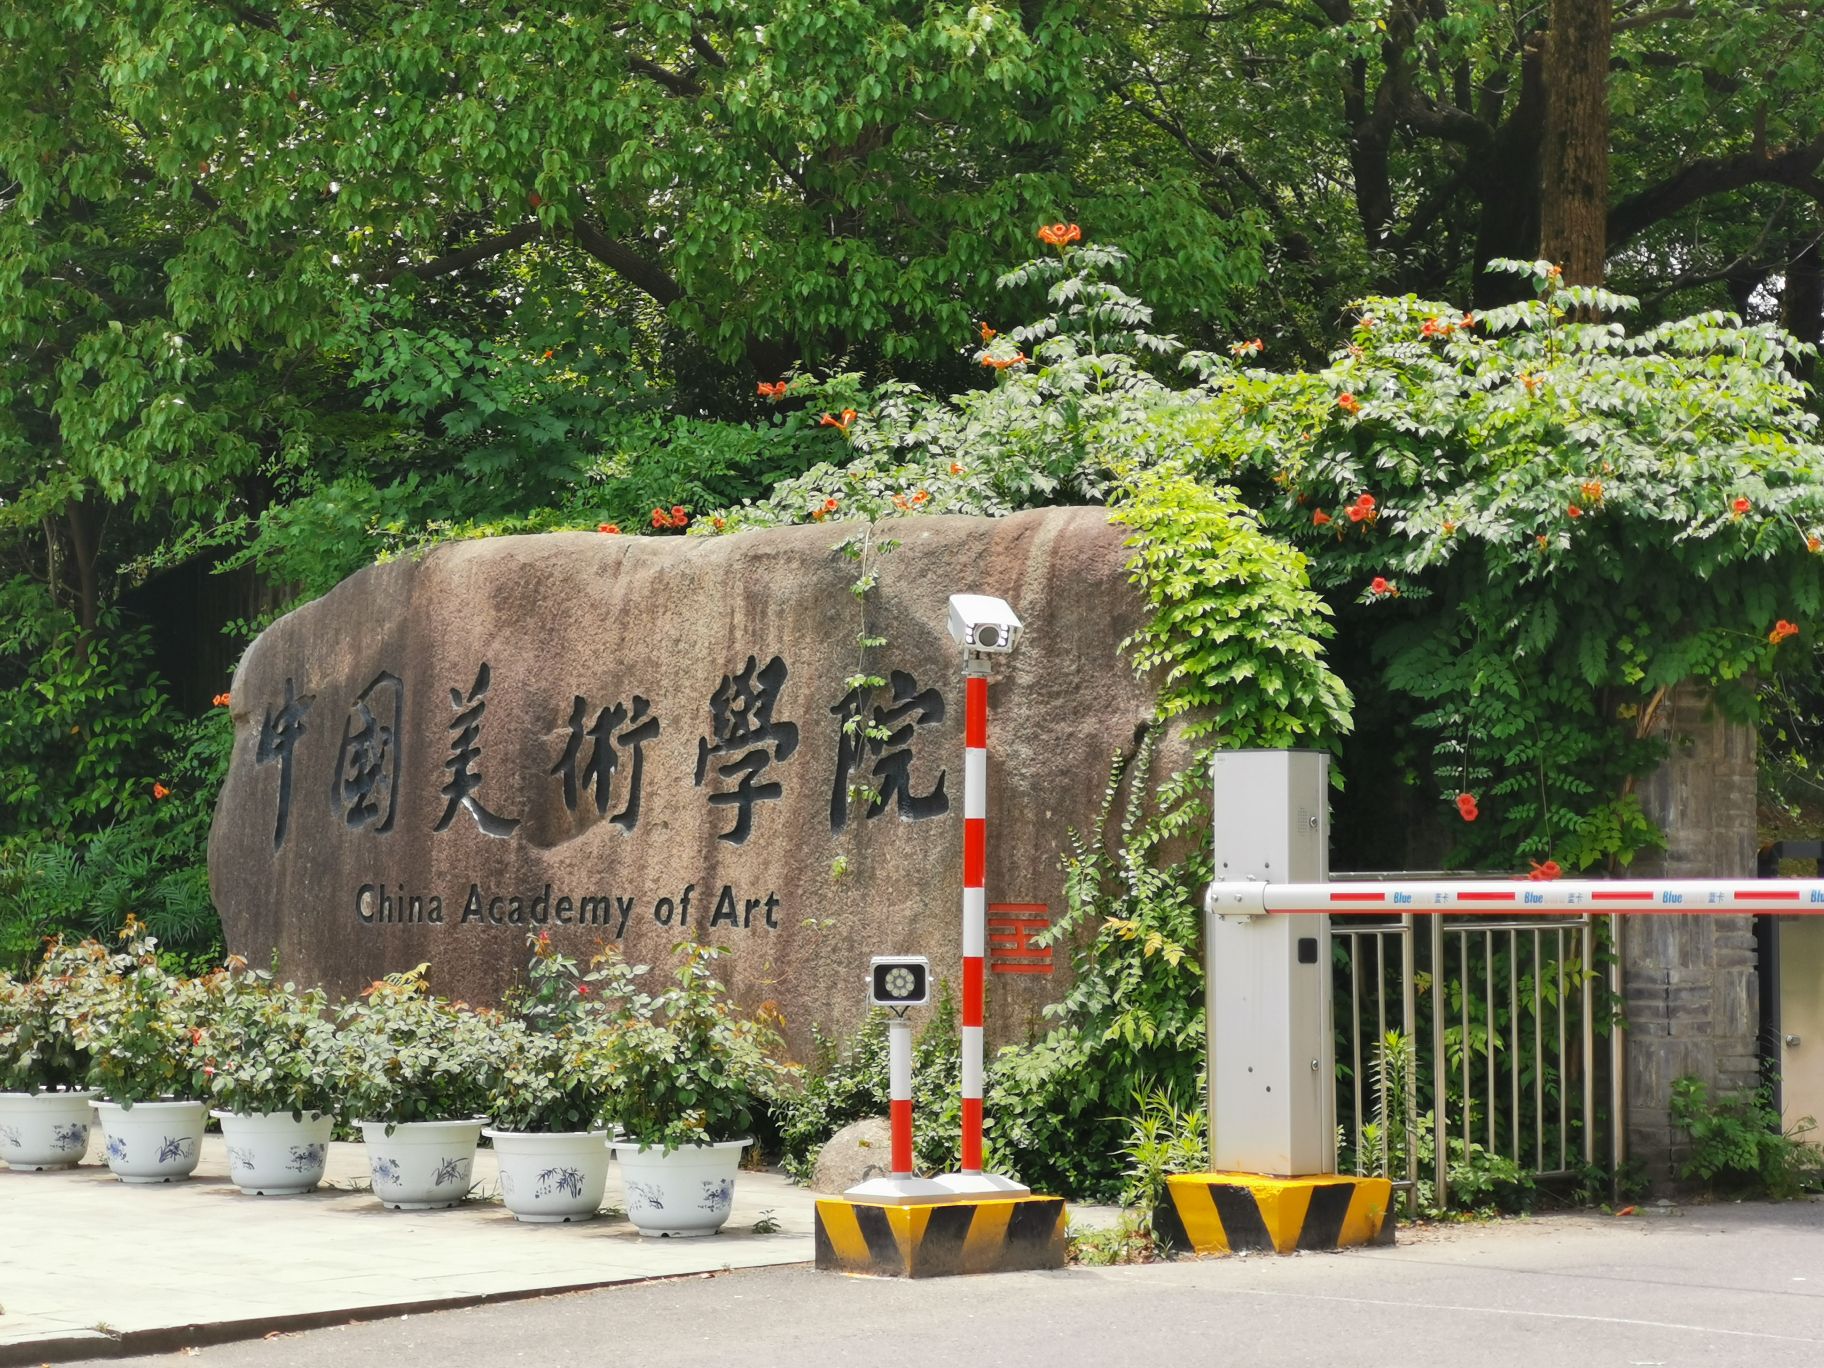 【携程攻略】杭州中国美术学院象山校区景点,虽然不是一个知名打卡景点，但是美院的设计绝对一流，非常值得一来，…